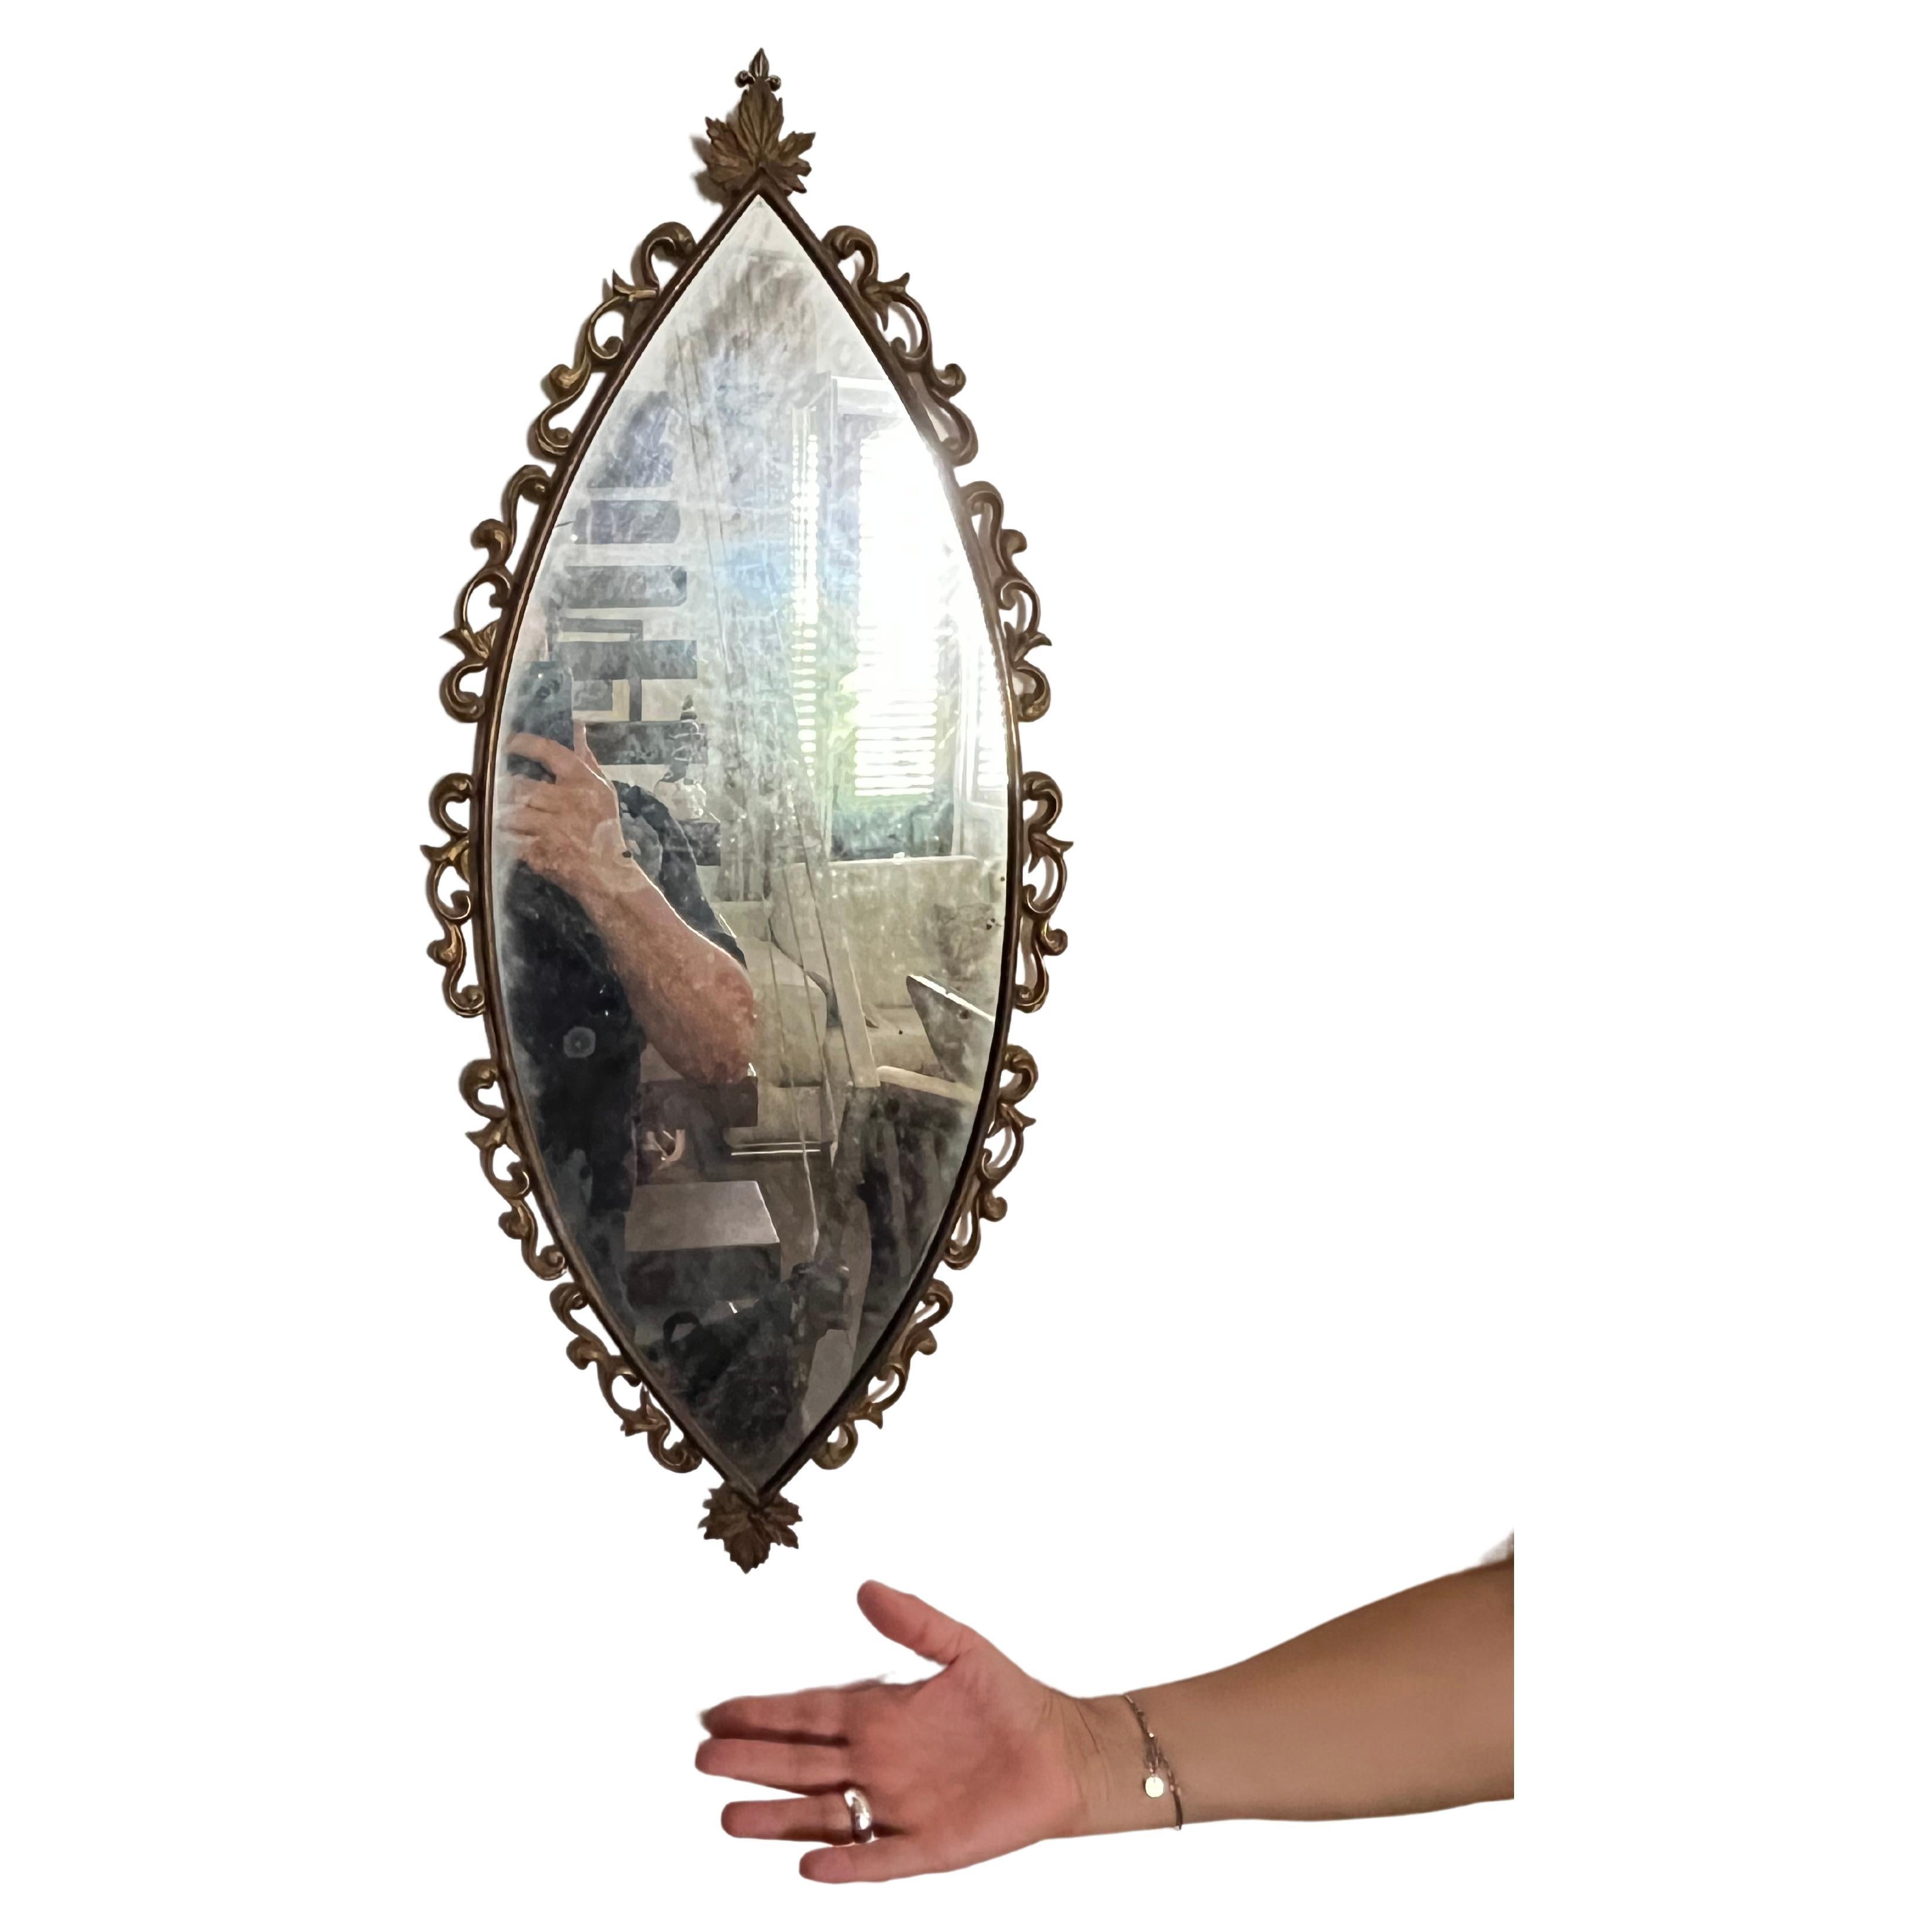 Bronzespiegel, italienische Produktion, 1950er Jahre
Es wurde in einer noblen Wohnung gefunden, ist intakt und in gutem Zustand. Kleine Zeichen der Zeit.
Die Form ist sehr speziell.

Wir garantieren eine angemessene Verpackung und versenden per DHL,